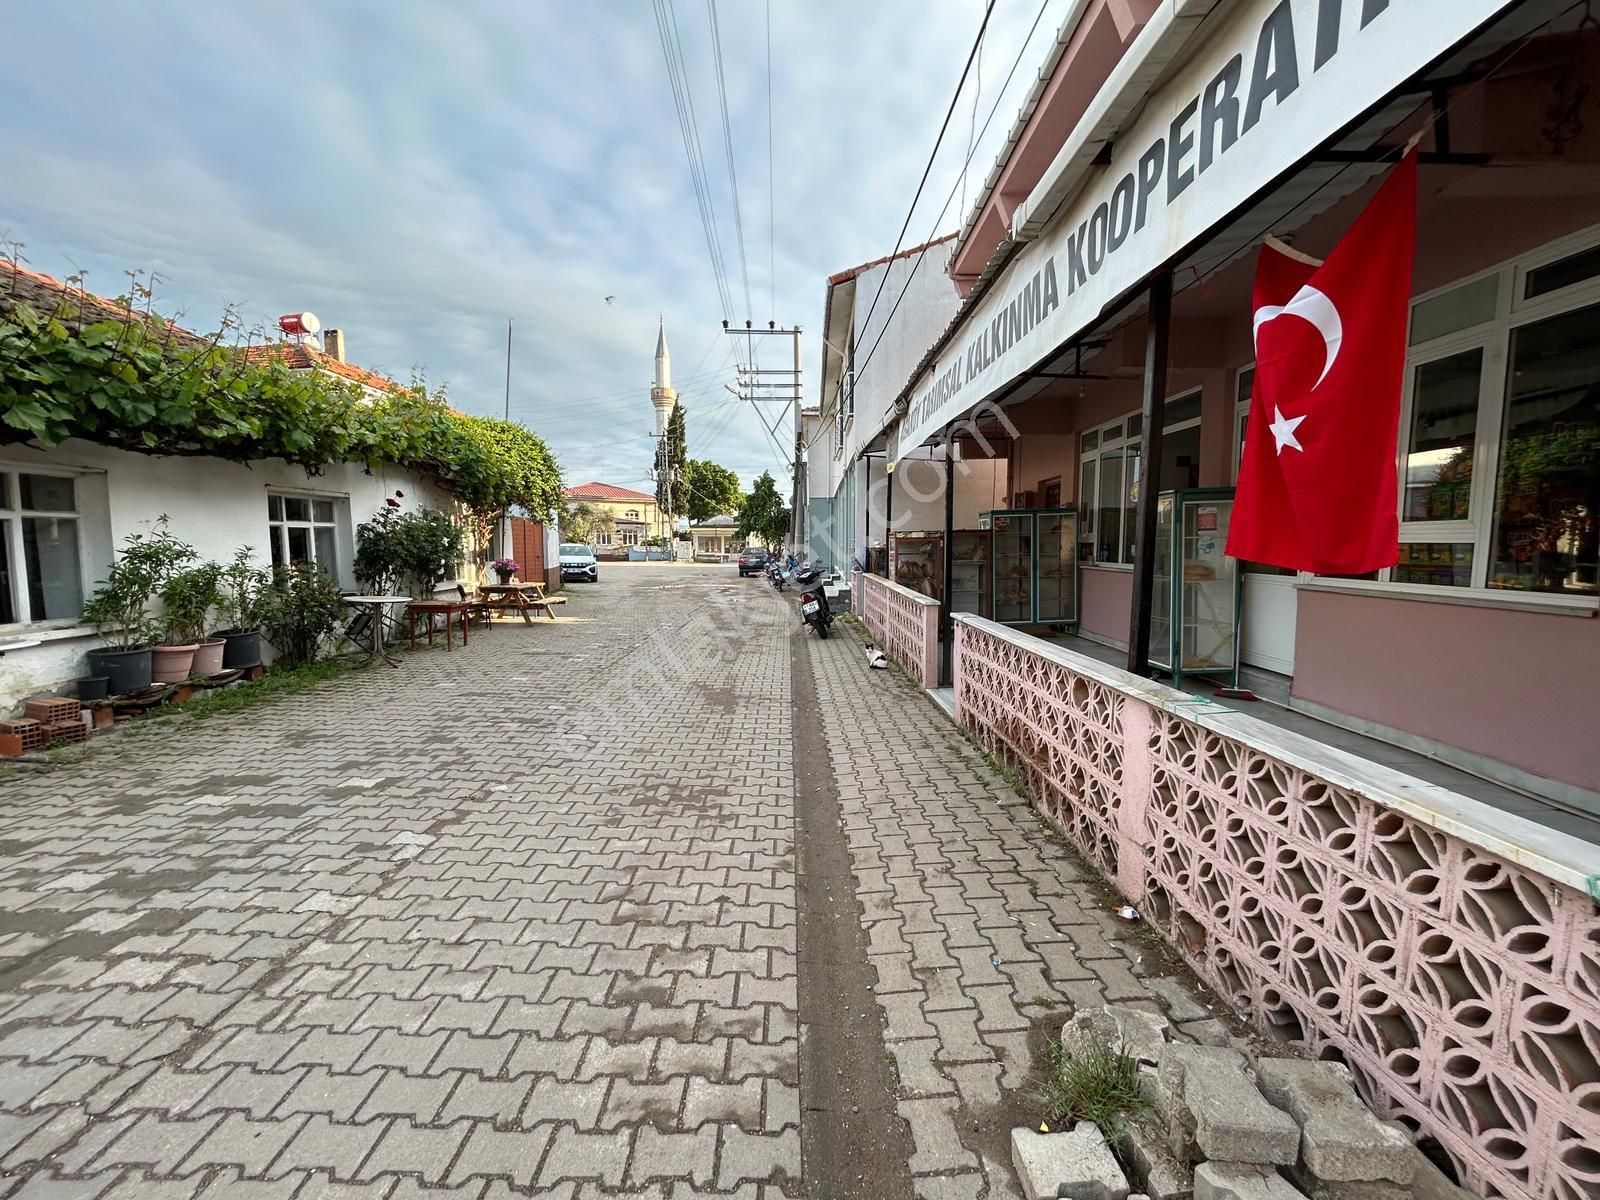 Biga Ağaköy Köyü Kiralık Dükkan & Mağaza BİGA AĞAKÖY’DE DEVREN MUHİTİNDE TEK DEVREN KİRALIK MARKET